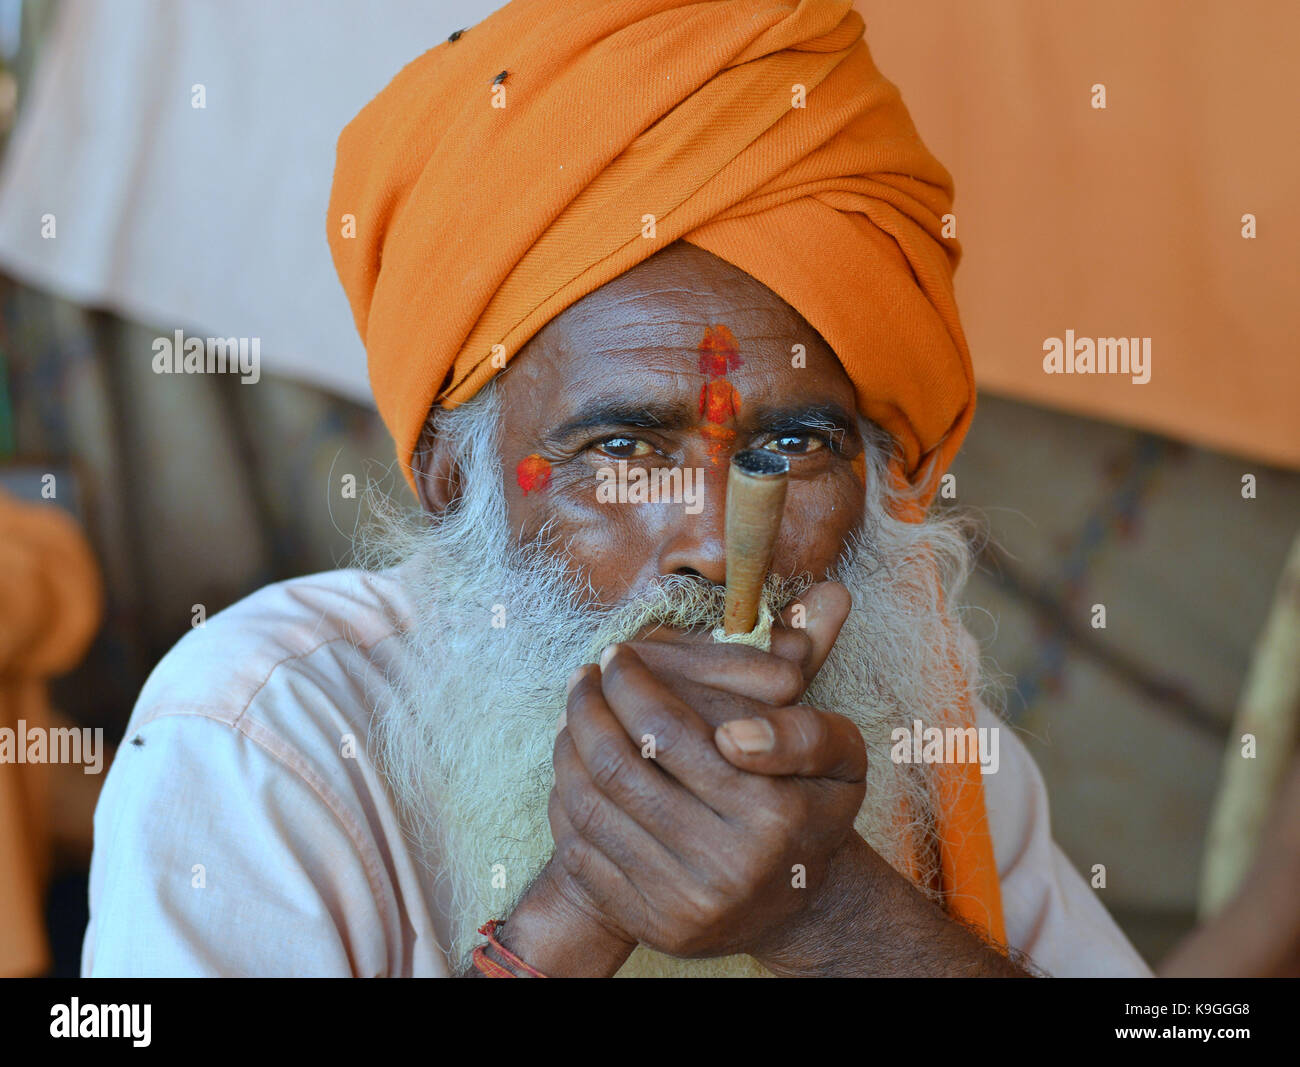 Alte sadhu mit orangefarbenen Turban, dicken weißen Bart und zwei rote tilaka Markierungen auf seiner Stirn (eine über der anderen), rauchen Haschisch in einem Chillum pipe Stockfoto